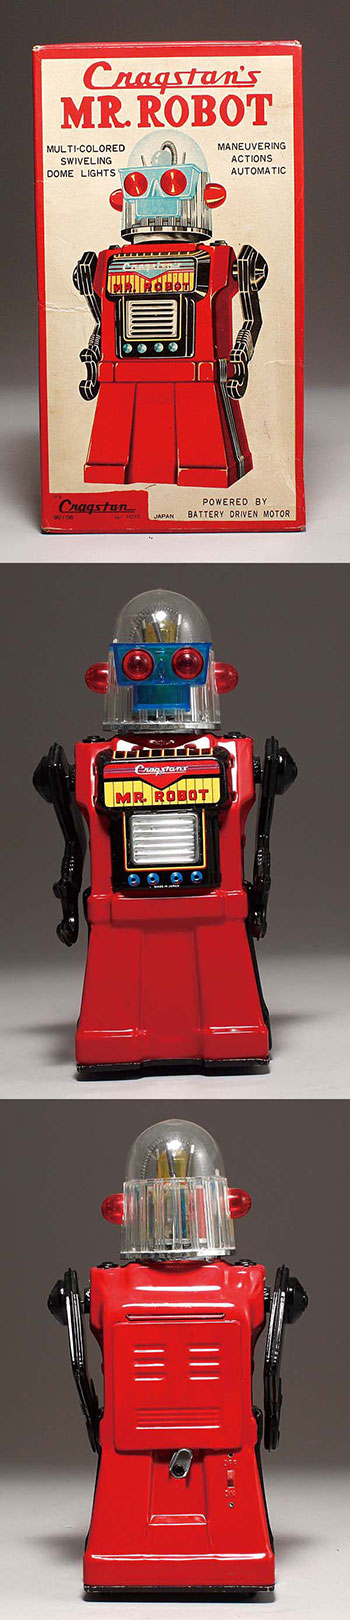 ヨネザワ＋クラグスタン/日本＋アメリカ ミスター・ロボット(MR.ROBOT 